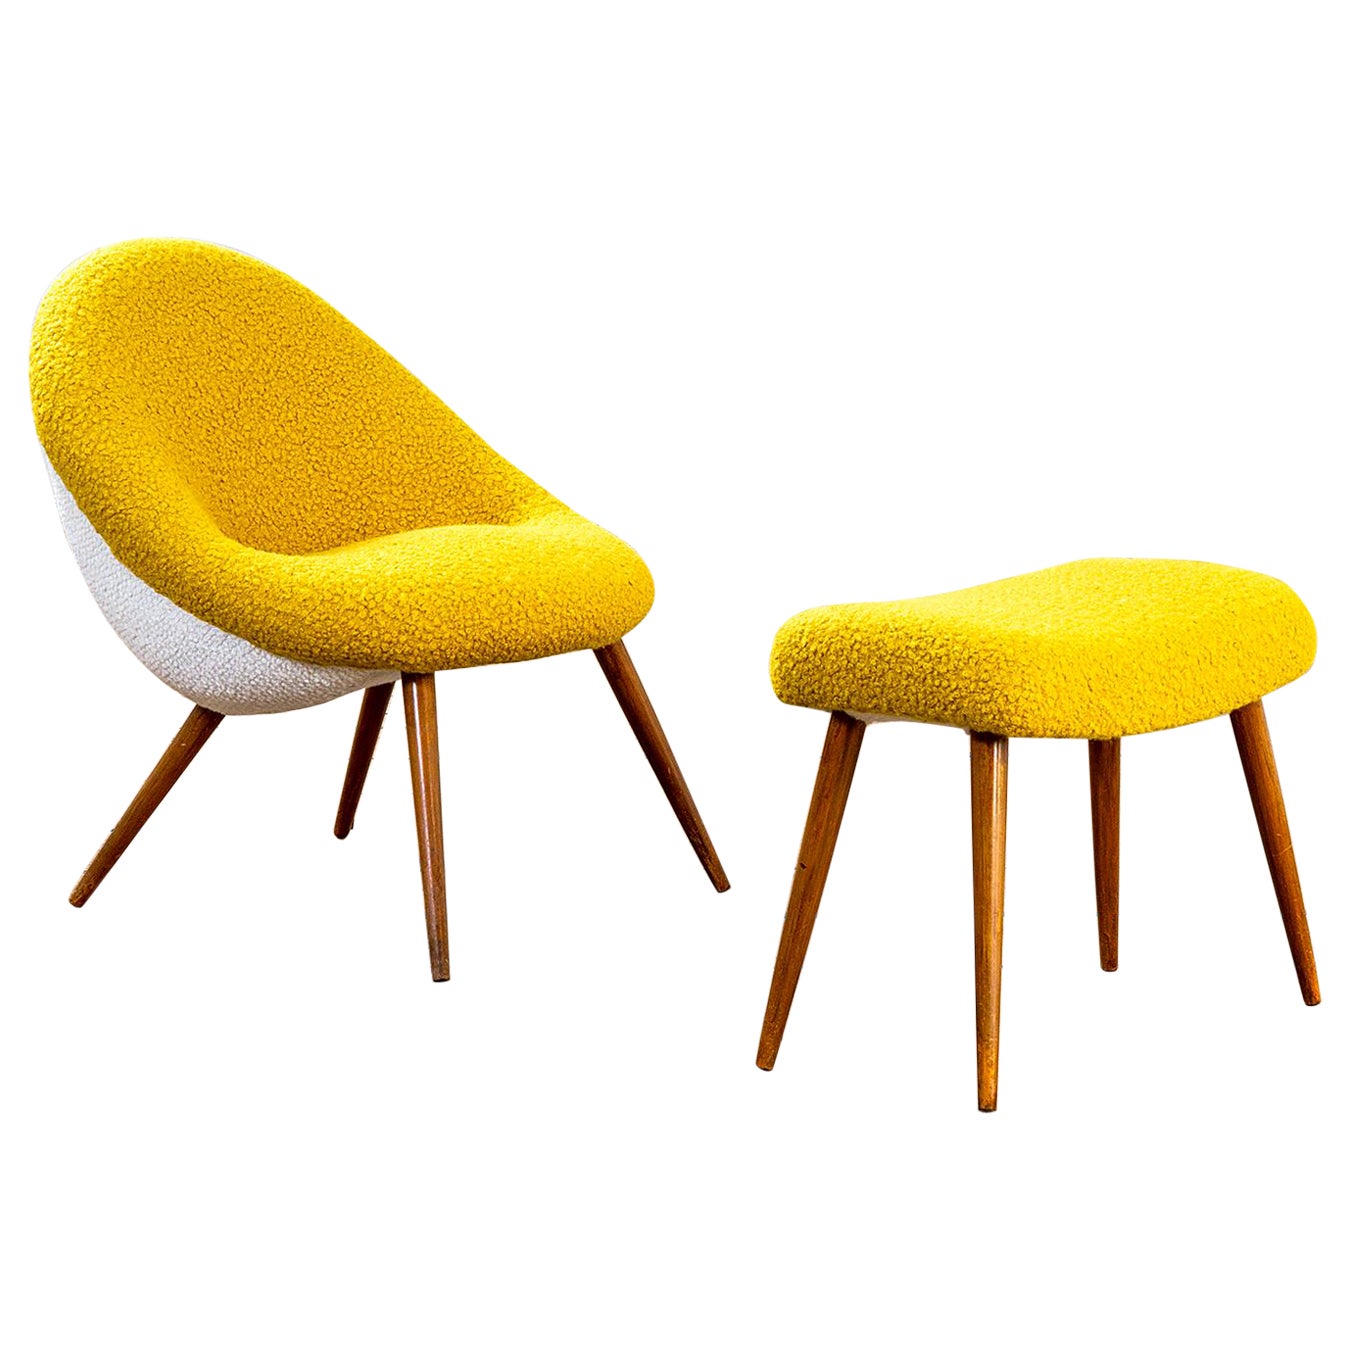 Set aus Sessel und Fußhocker aus Holz und Stoff aus dem 20. Jahrhundert